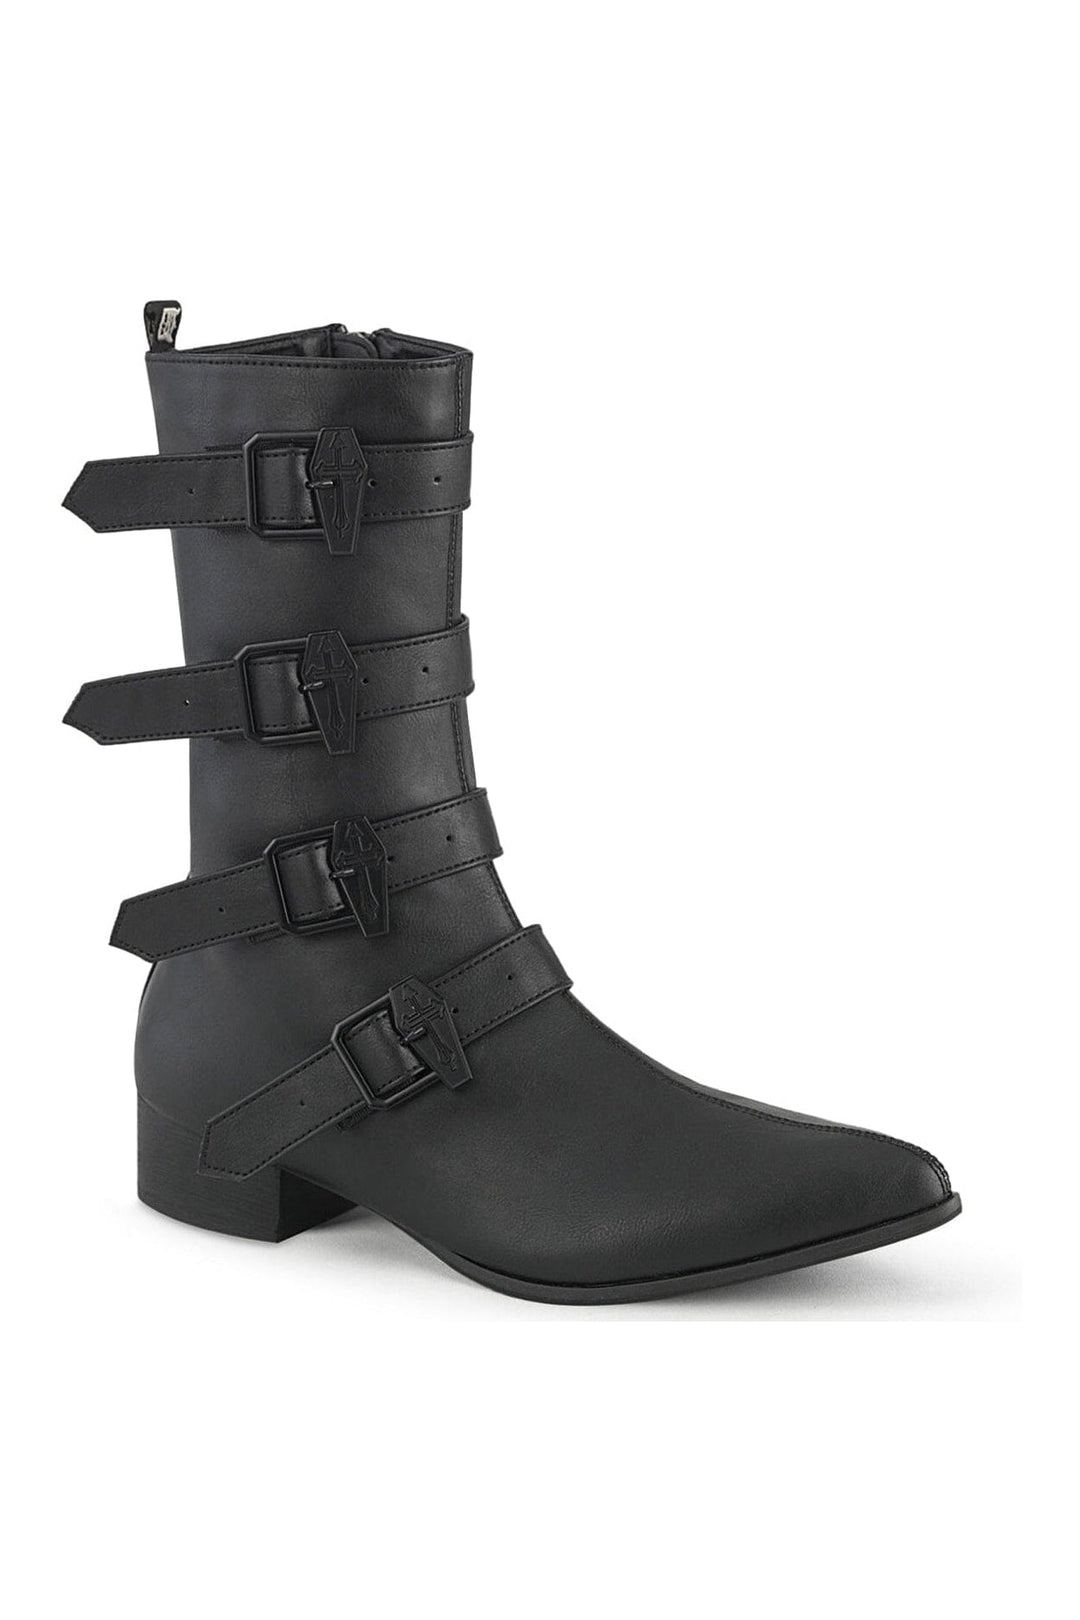 WARLOCK-110-C Black Vegan Leather Knee Boot-Knee Boots-Demonia-Black-10-Vegan Leather-SEXYSHOES.COM